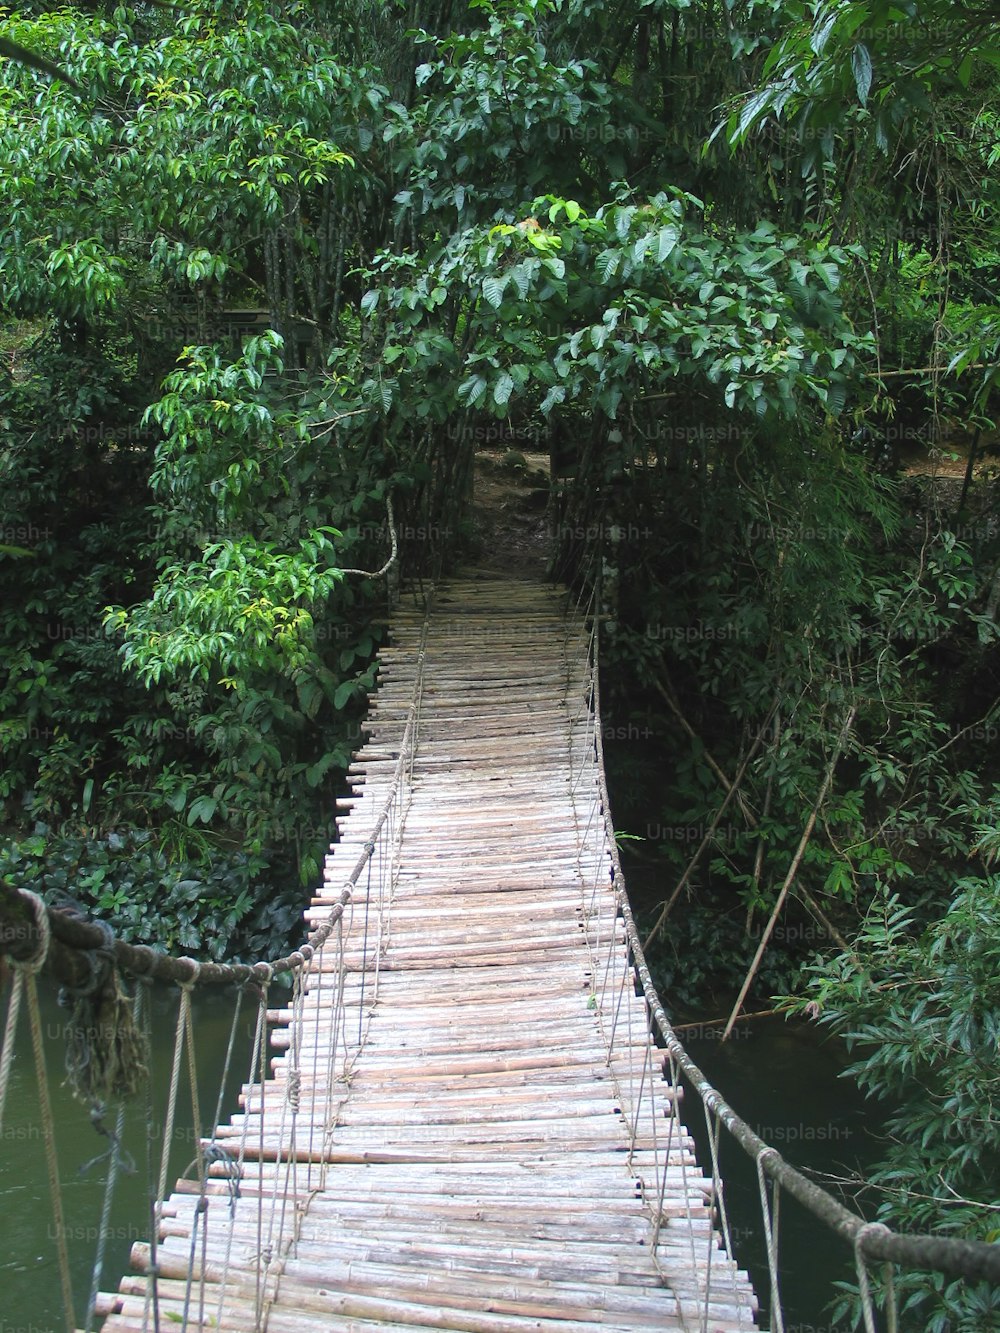 Un piccolo ponte nella giungla. Thailandia 2004